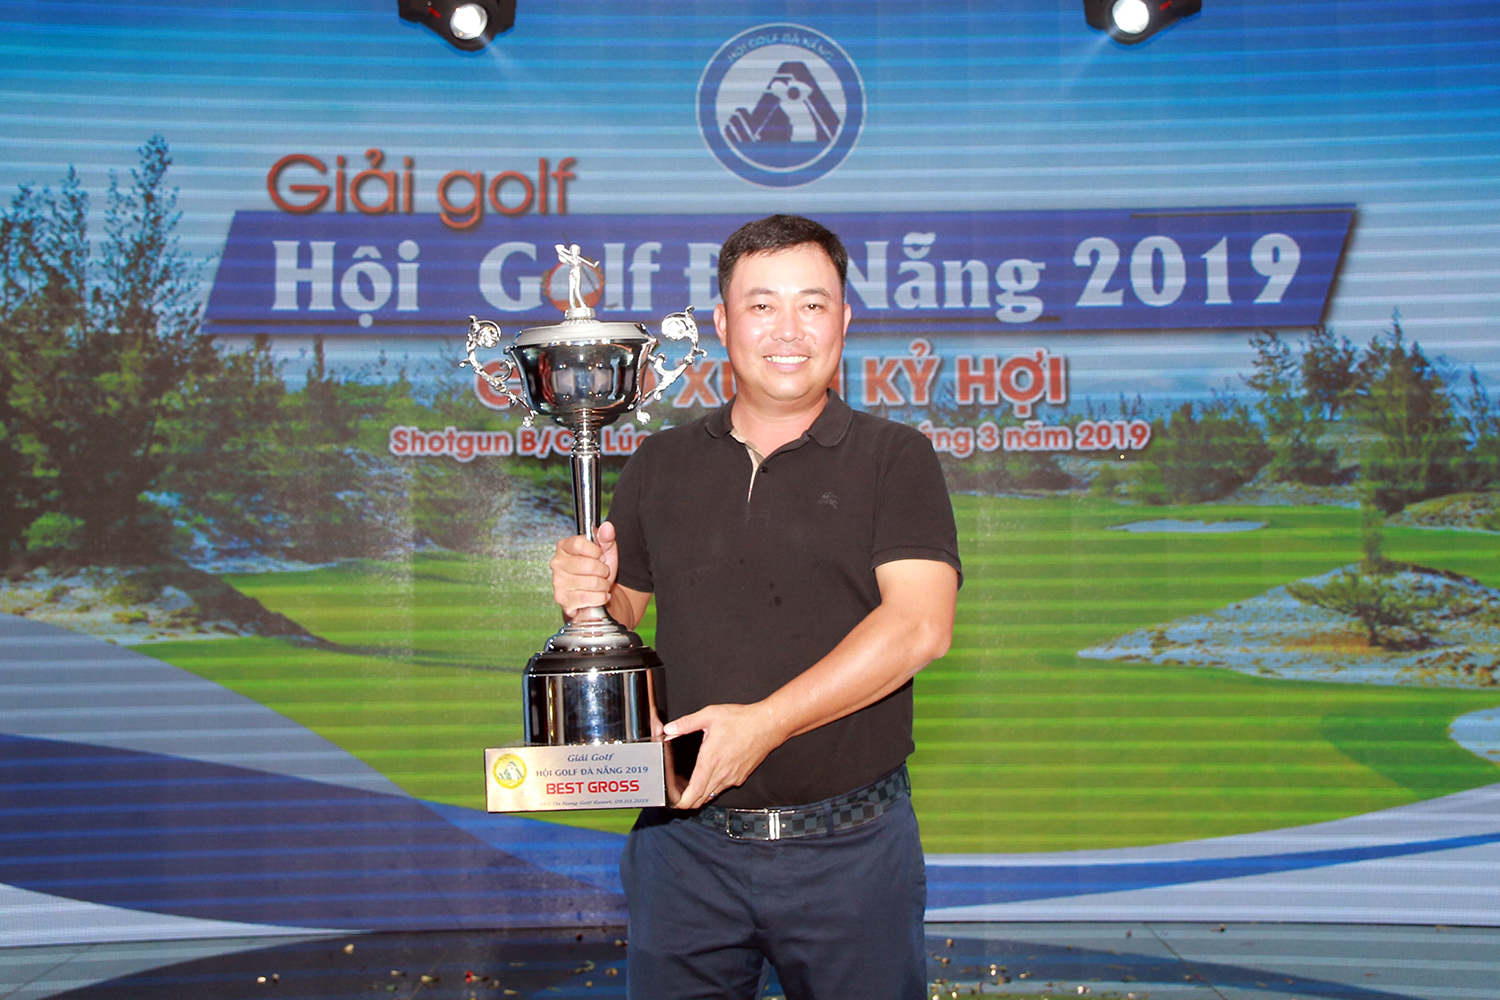 Golfer Hà Ngọc Hoàng Lộc giành cúp vô địch giải golf Hội golf TP Đà Nẵng 2019 – Chào xuân Kỷ Hợi